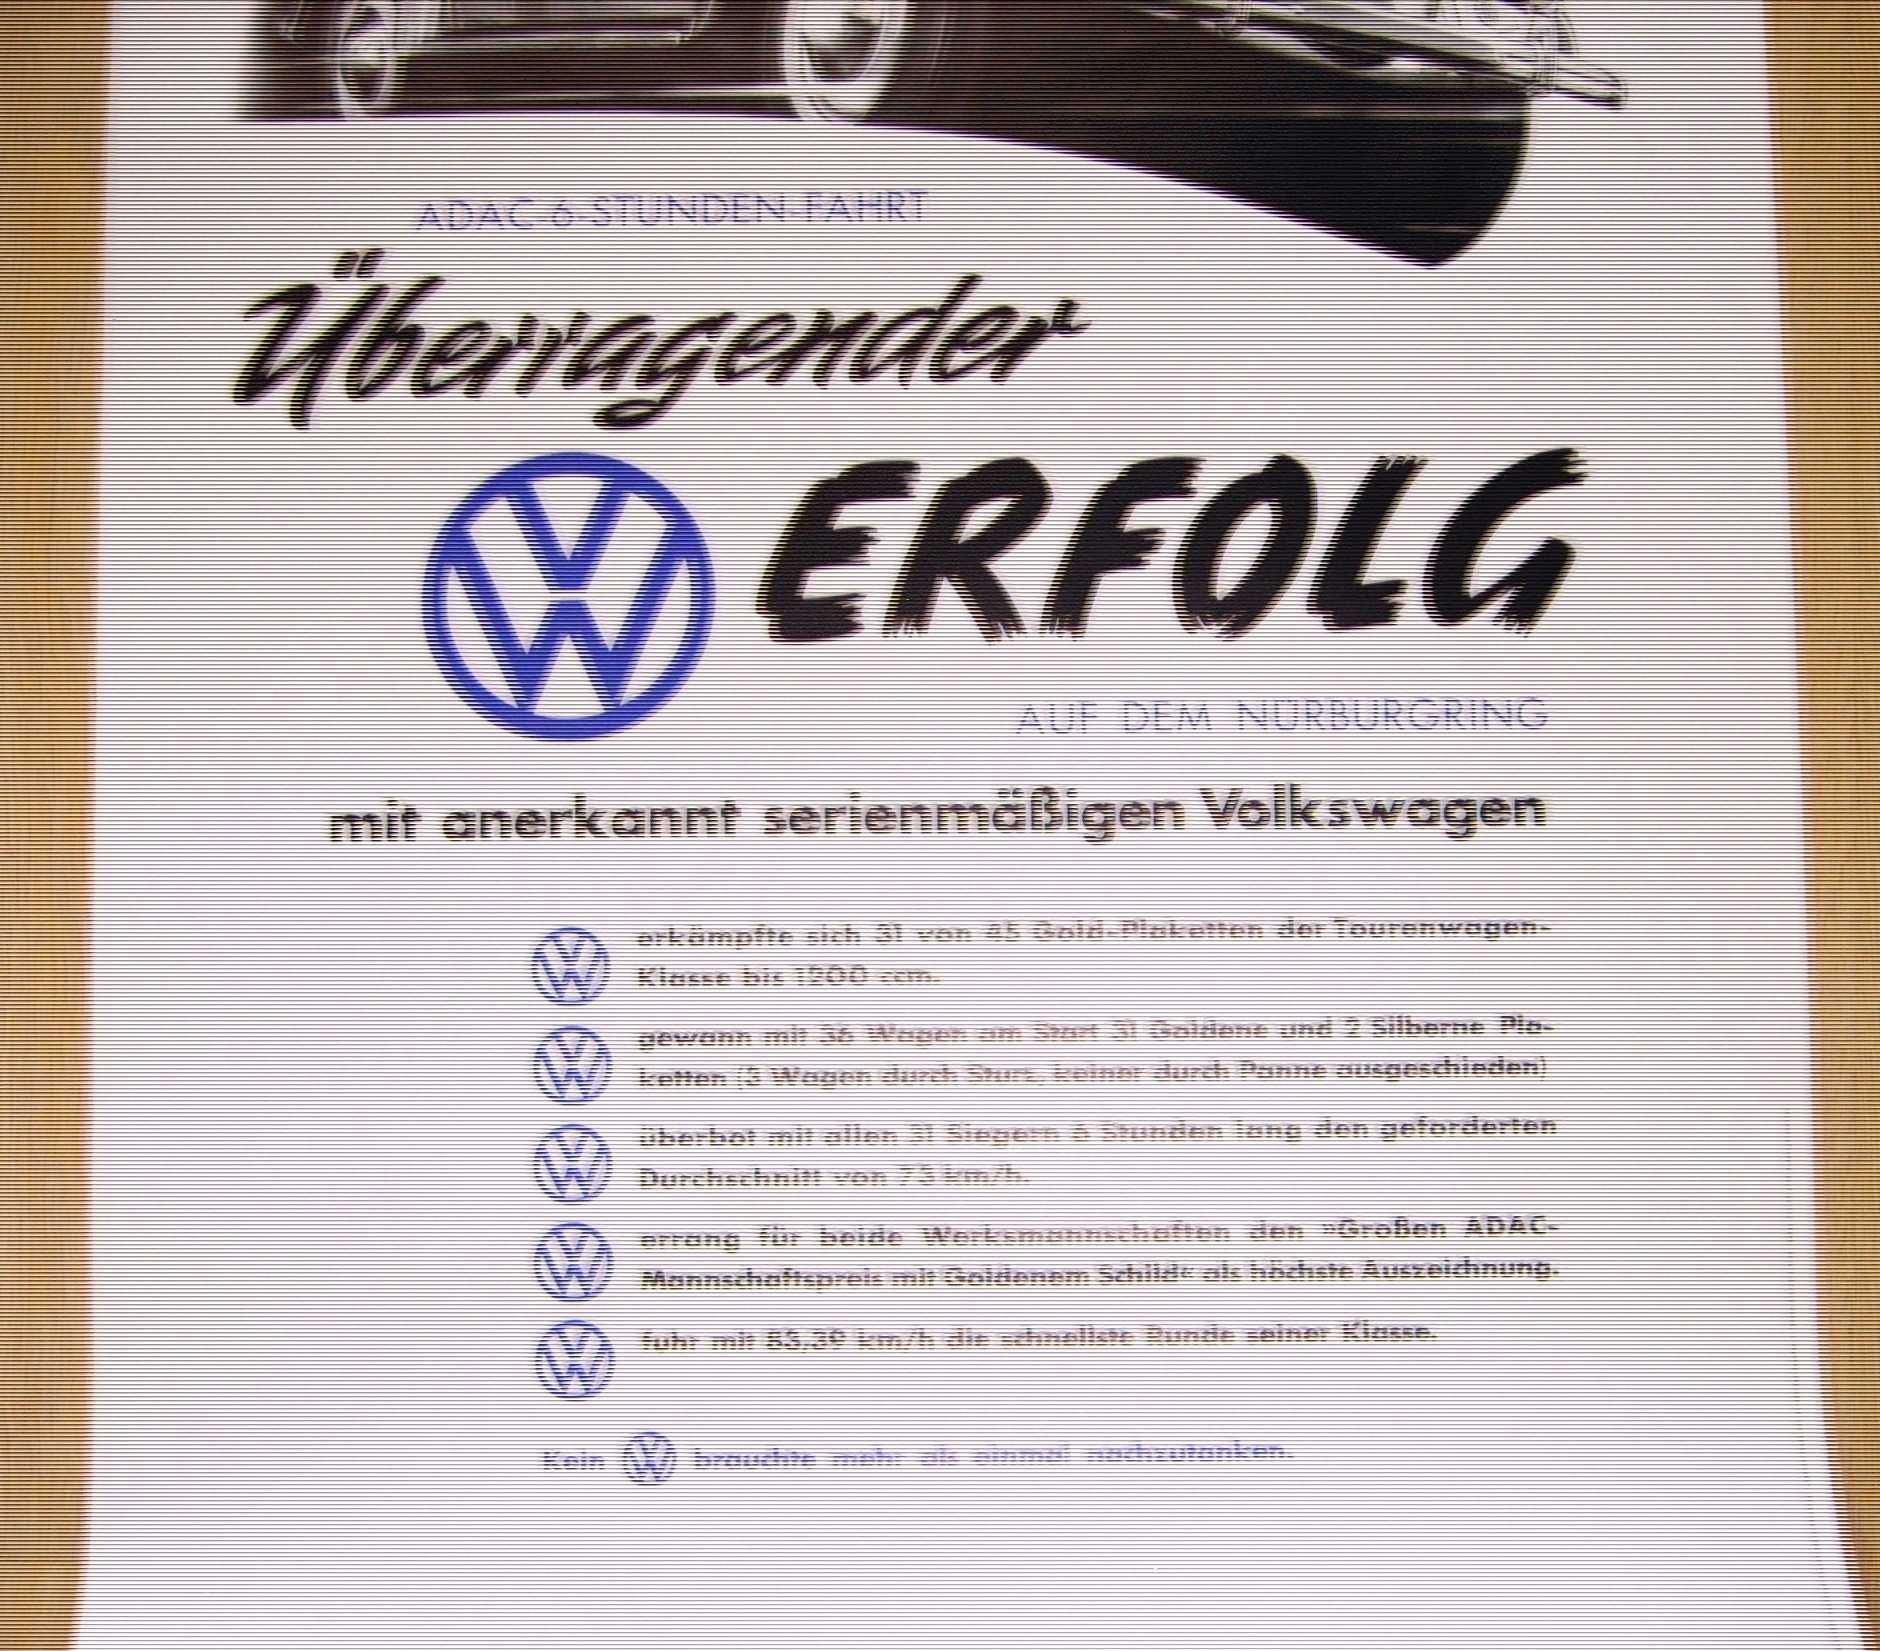 Plakat reklamowy VW-ADAC 6 Stunden Fahrt/oryginał